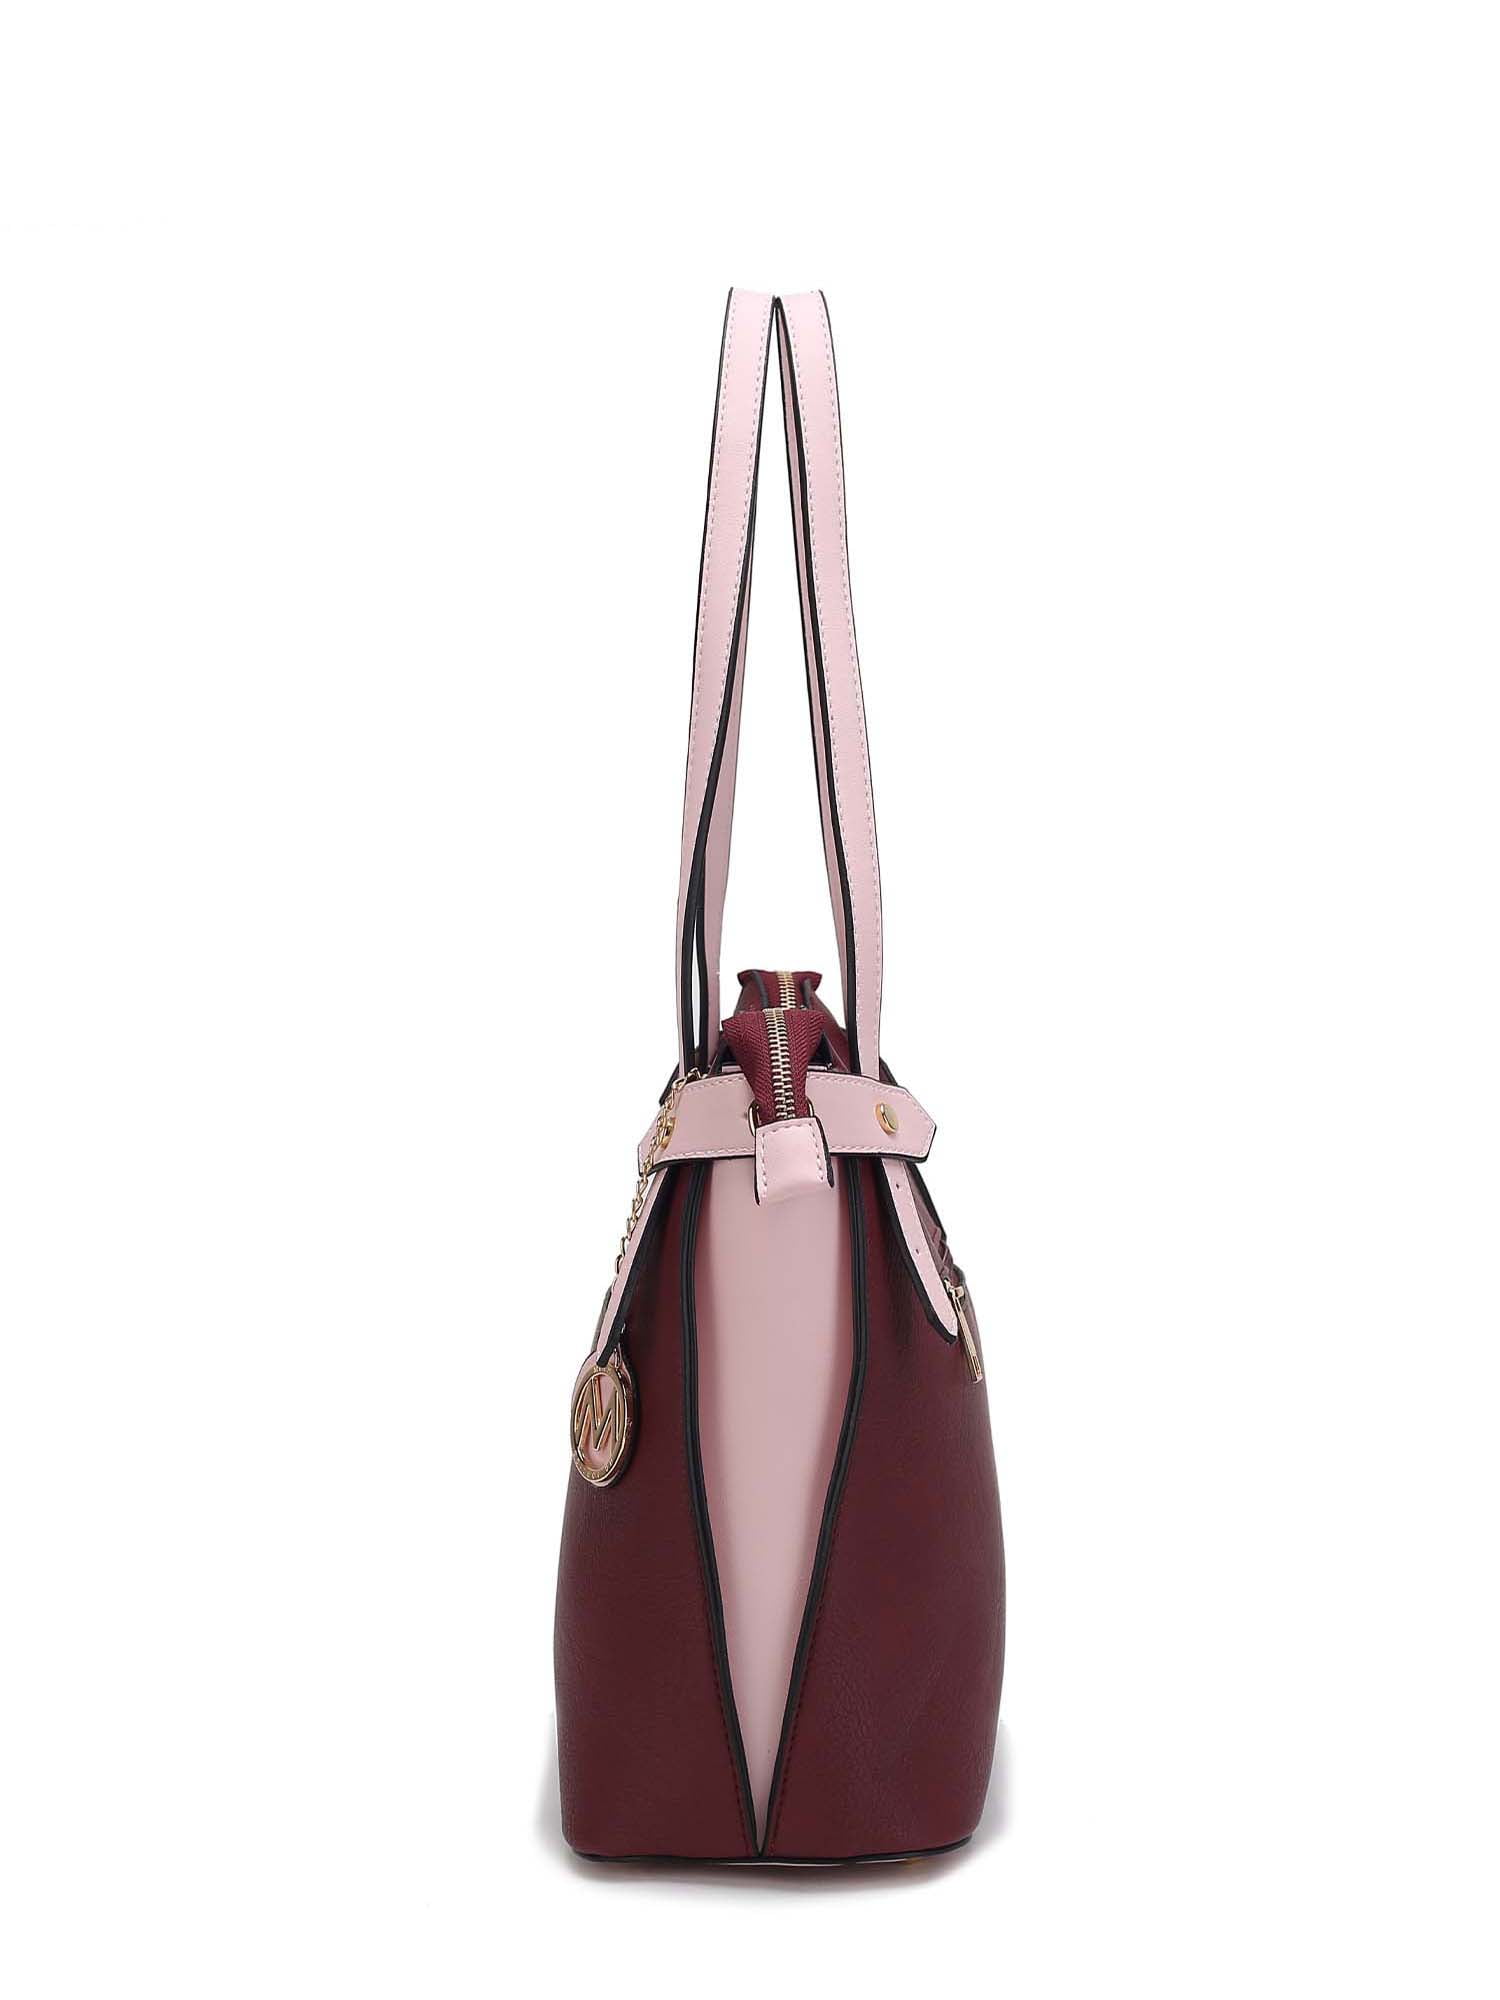  MKF Set Hobo Bag for Women & Wristlet Wallet – PU Leather  Designer Handbag Purse – Shoulder Strap Lady Pocketbook Beige-Cognac Brown  : Clothing, Shoes & Jewelry